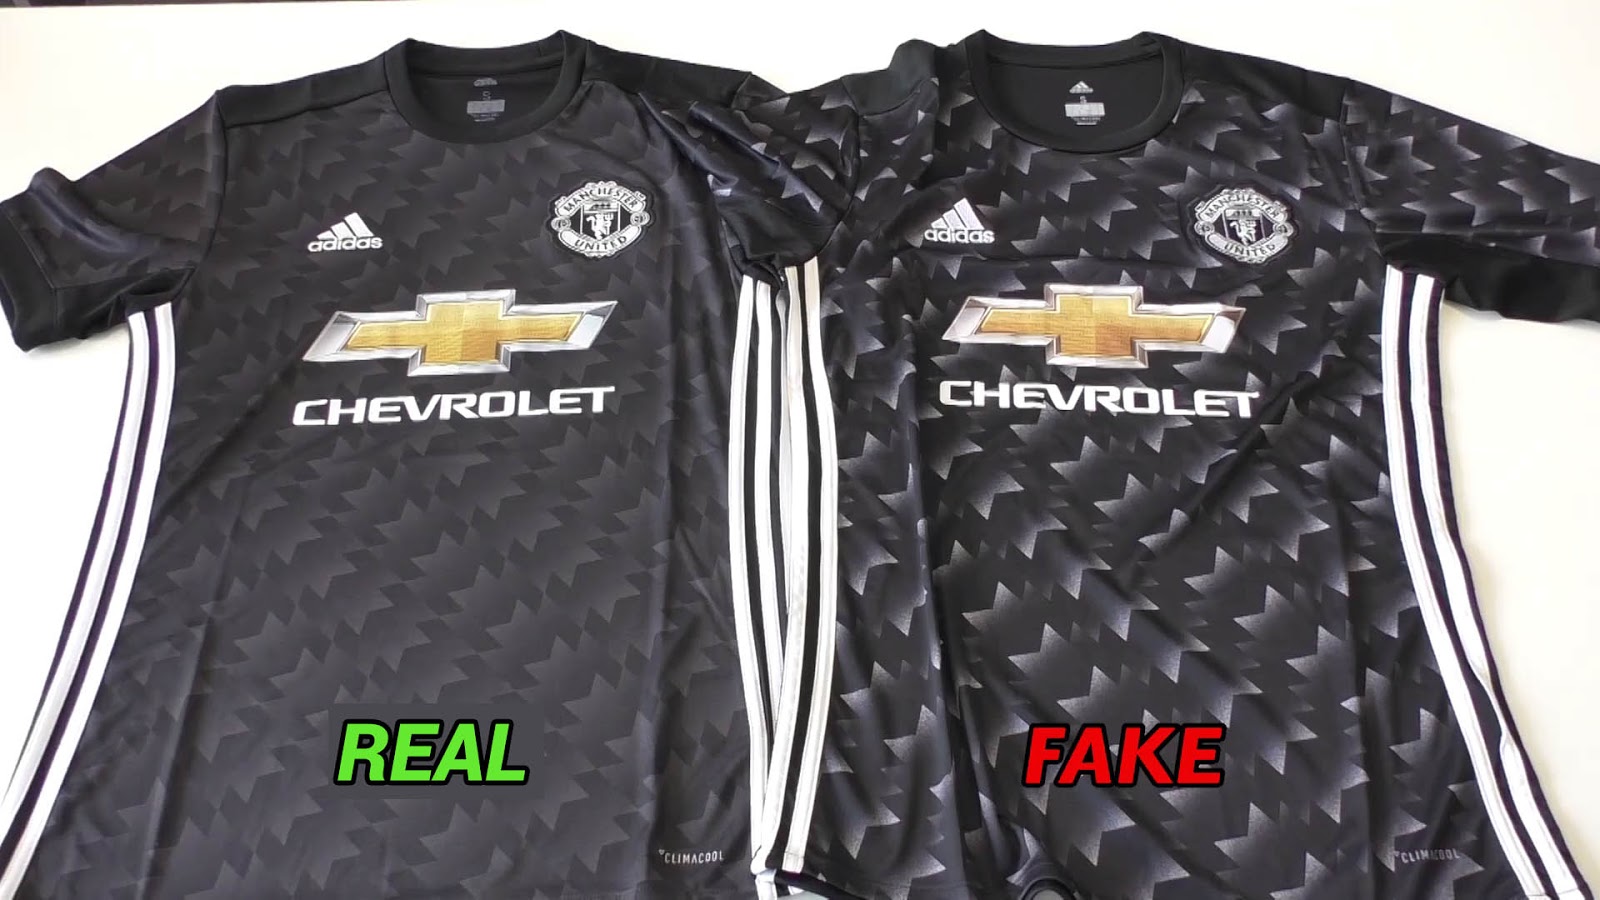 fake soccer shirts